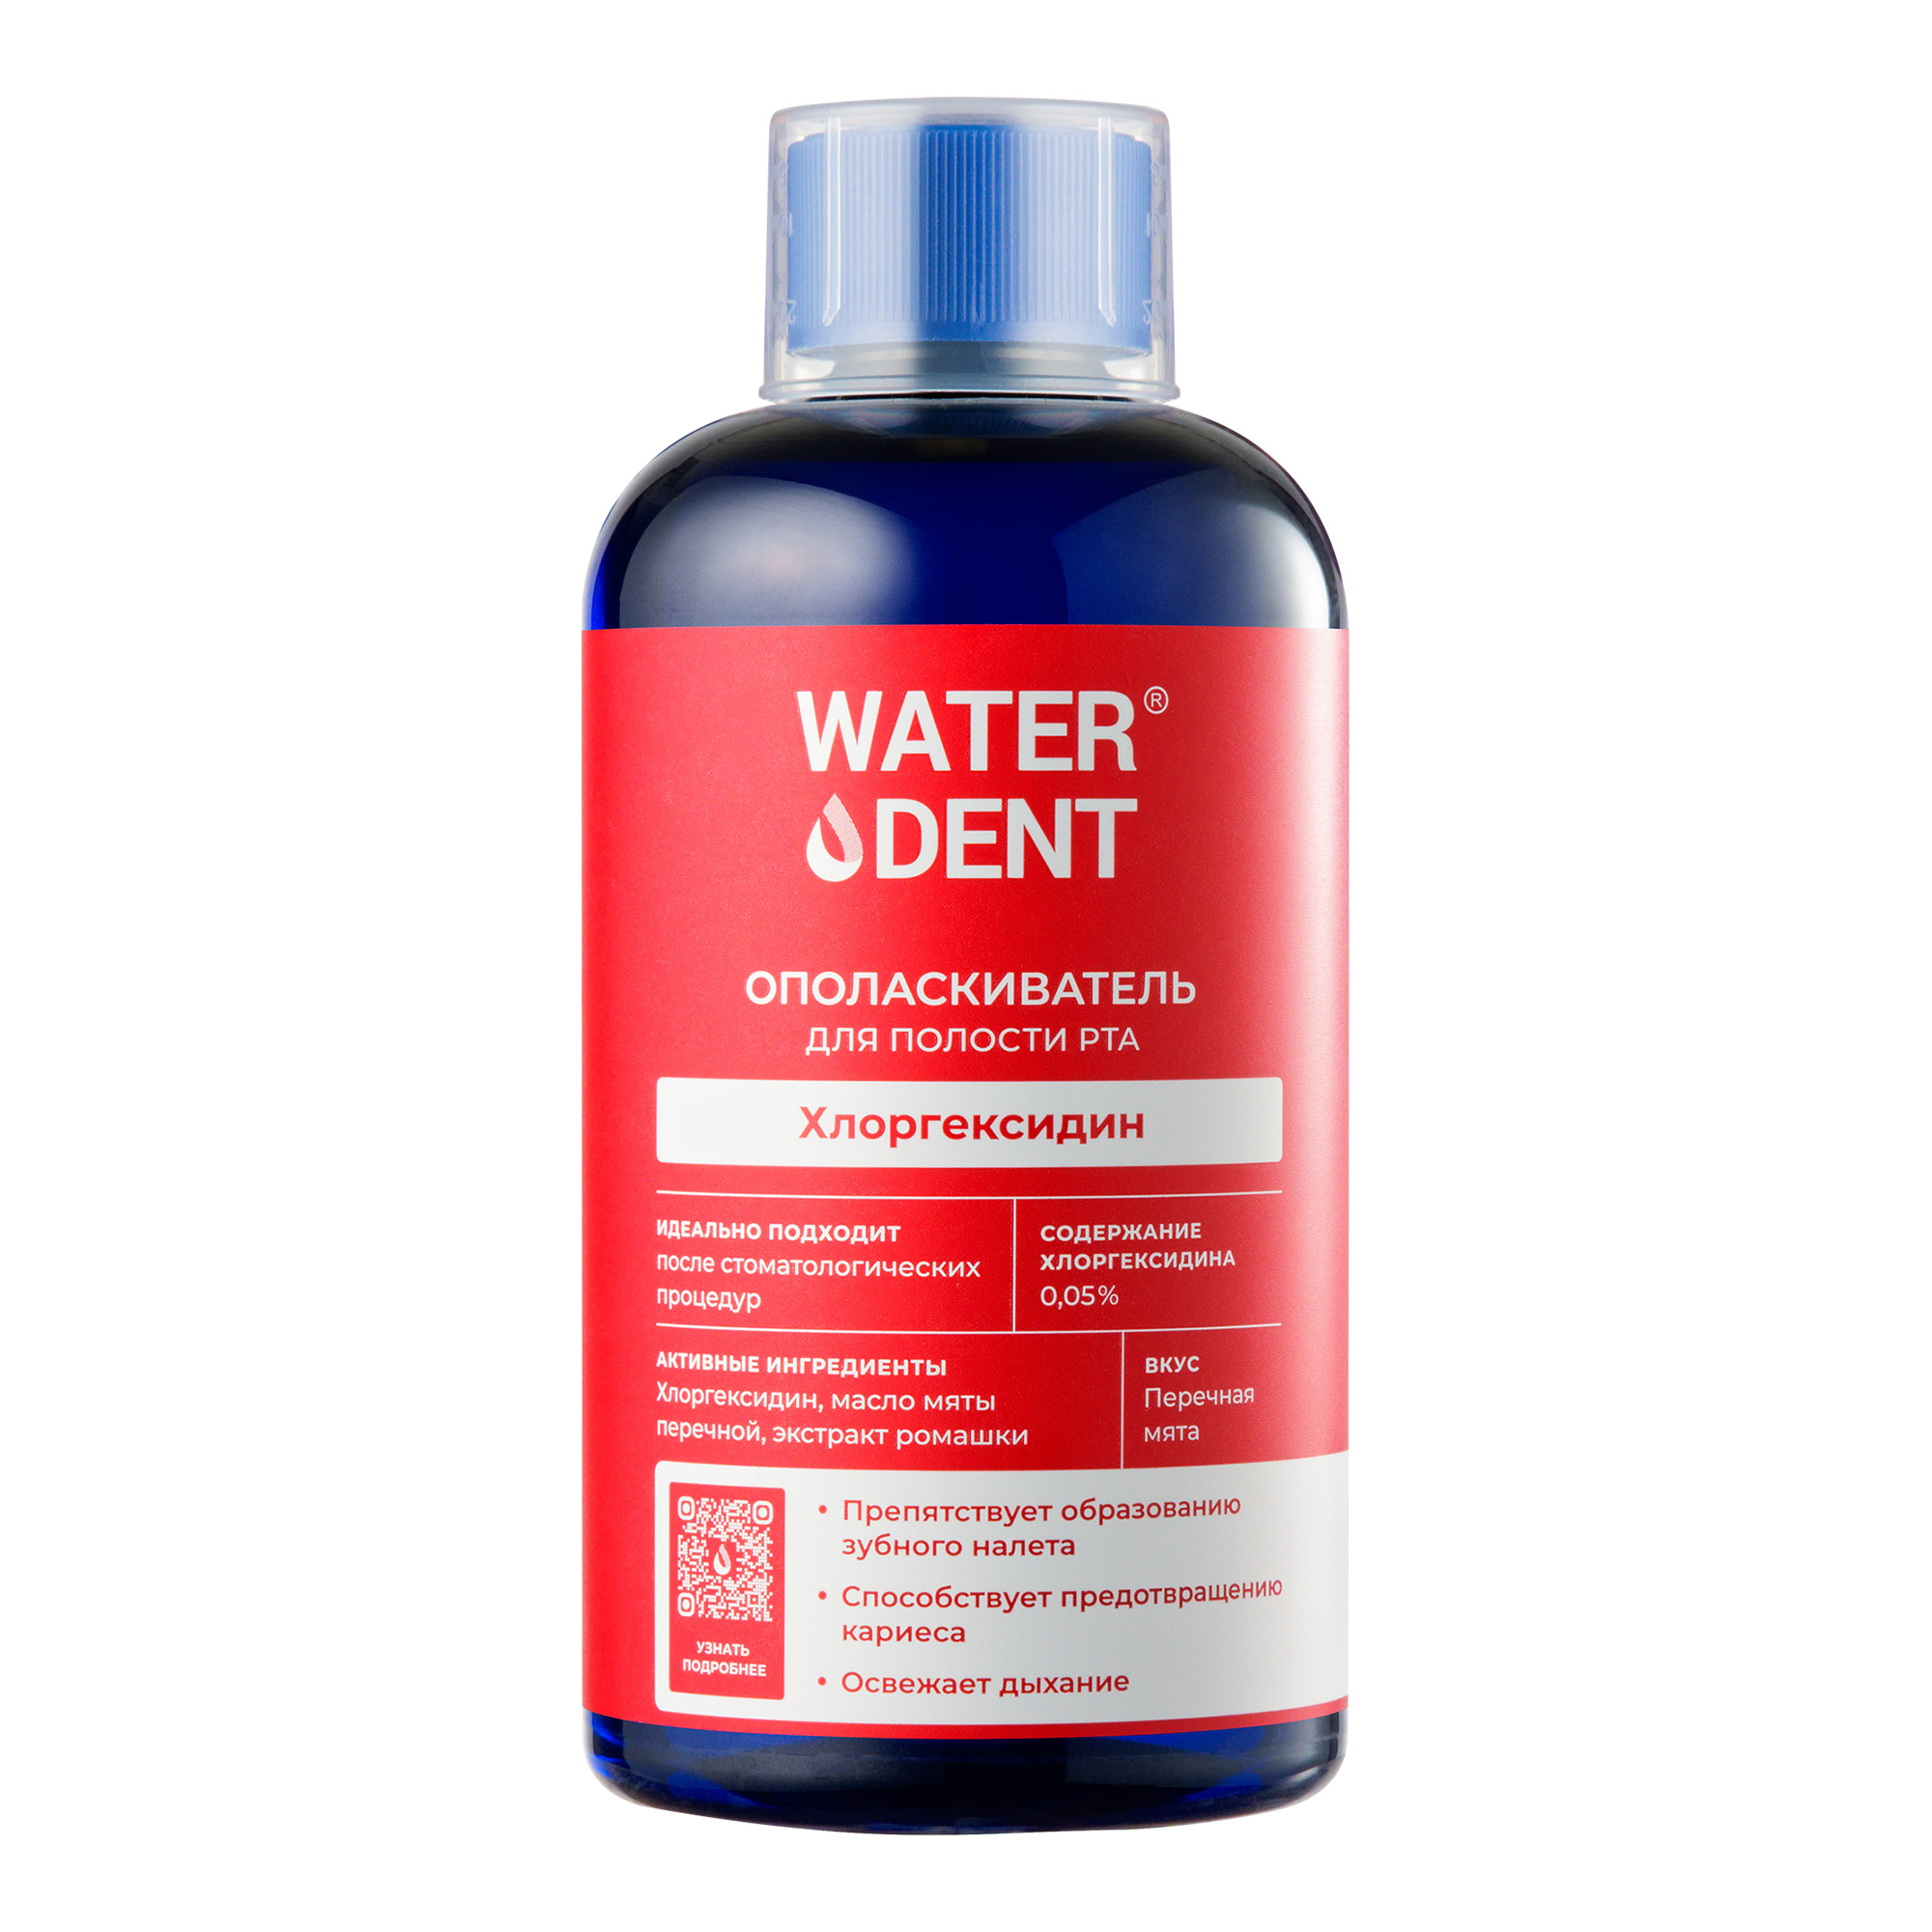 Waterdent, ополаскиватель для полости рта Хлоргексидин со вкусом мяты, 500 мл ополаскиватель полости рта fazzet armonico organic без фтора против гингивита 500 мл